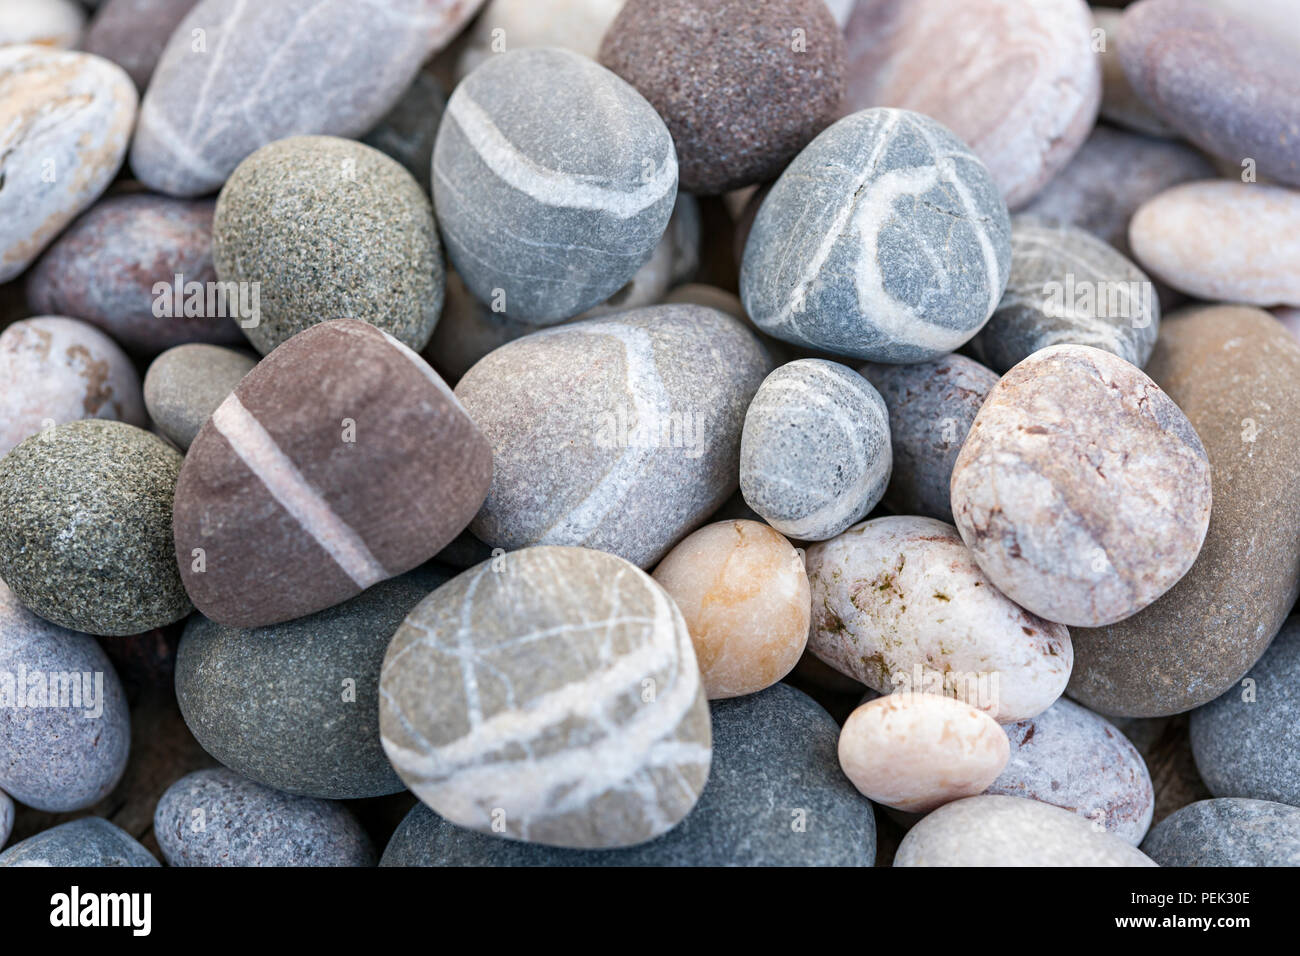 Plage de galets ronds ou rochers lisses avec diverses couleurs et formes de pierres close up Banque D'Images